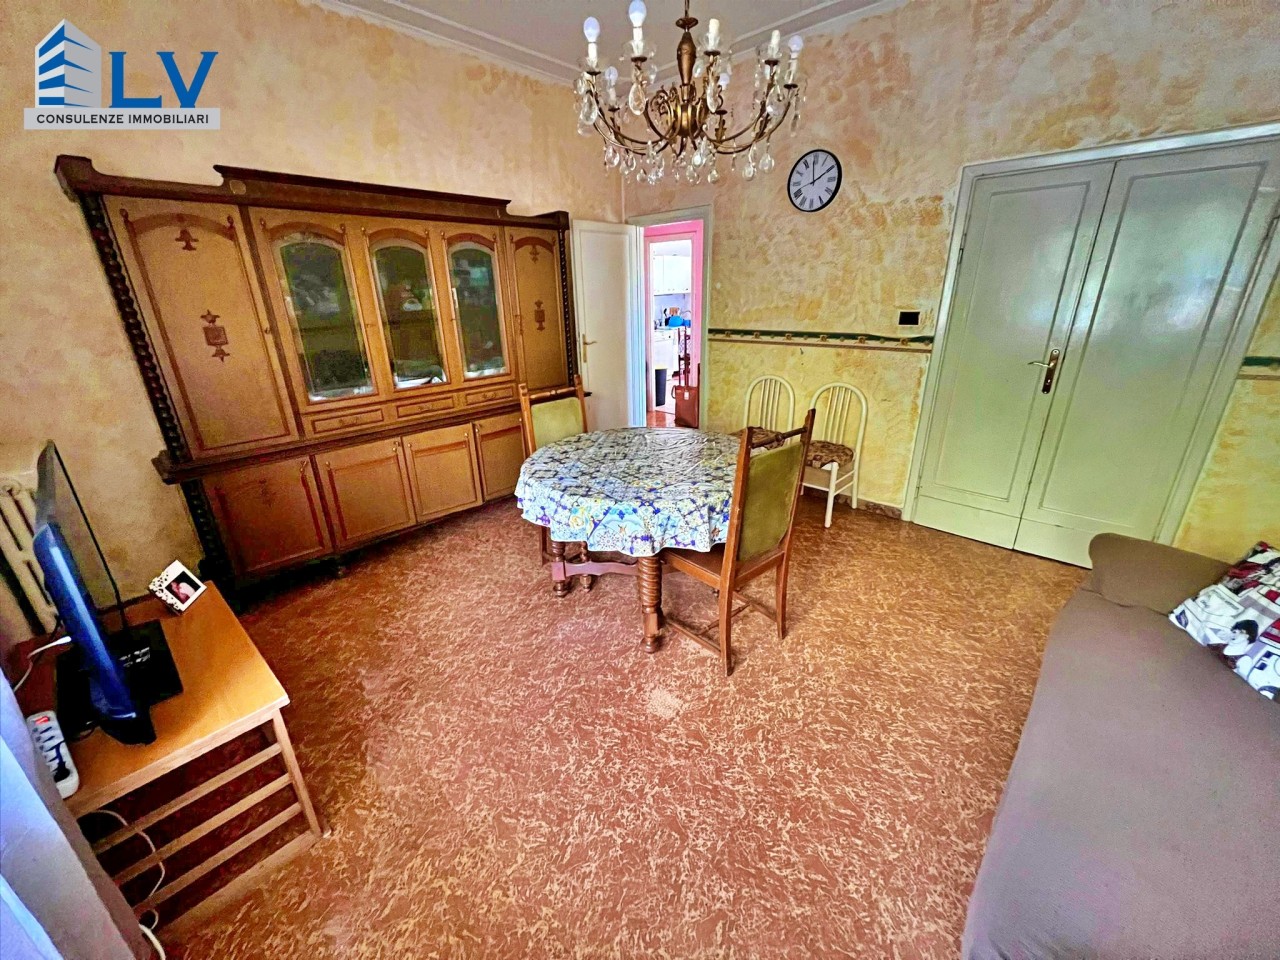 Appartamento in affitto a Frosinone, 3 locali, prezzo € 500 | CambioCasa.it